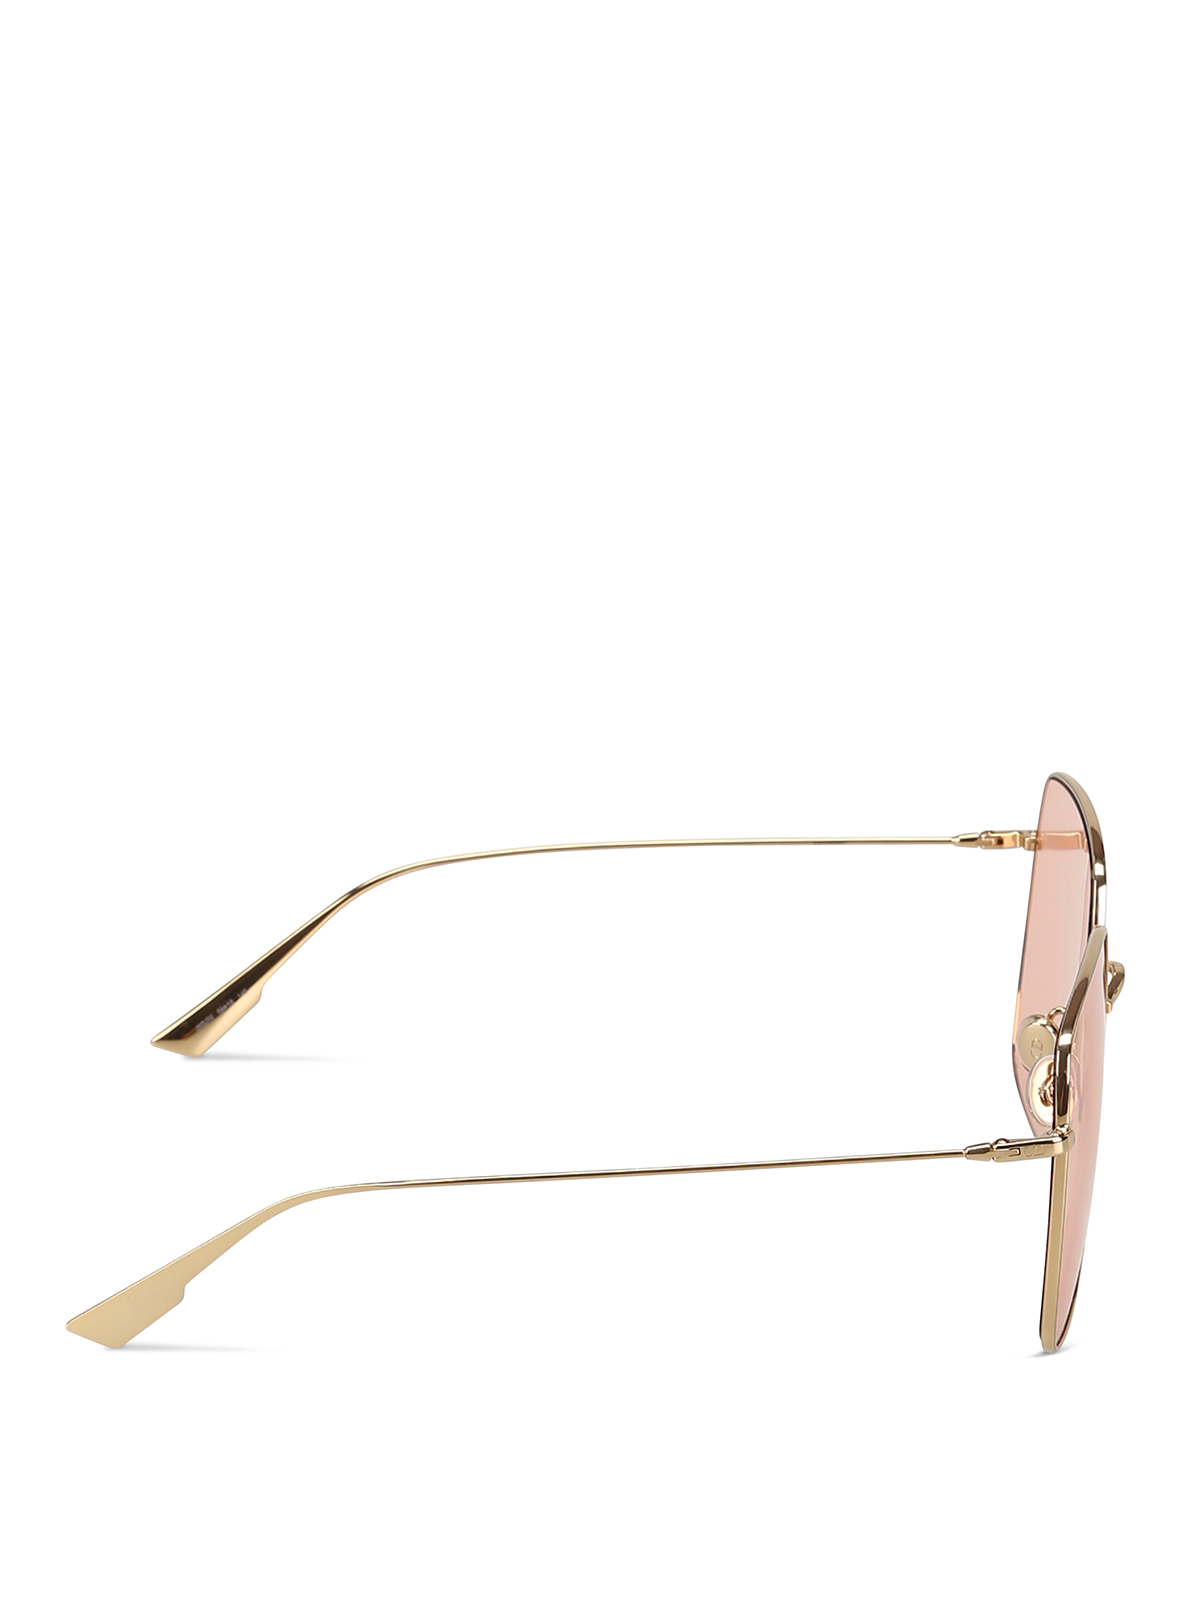 dior square frame sunglasses